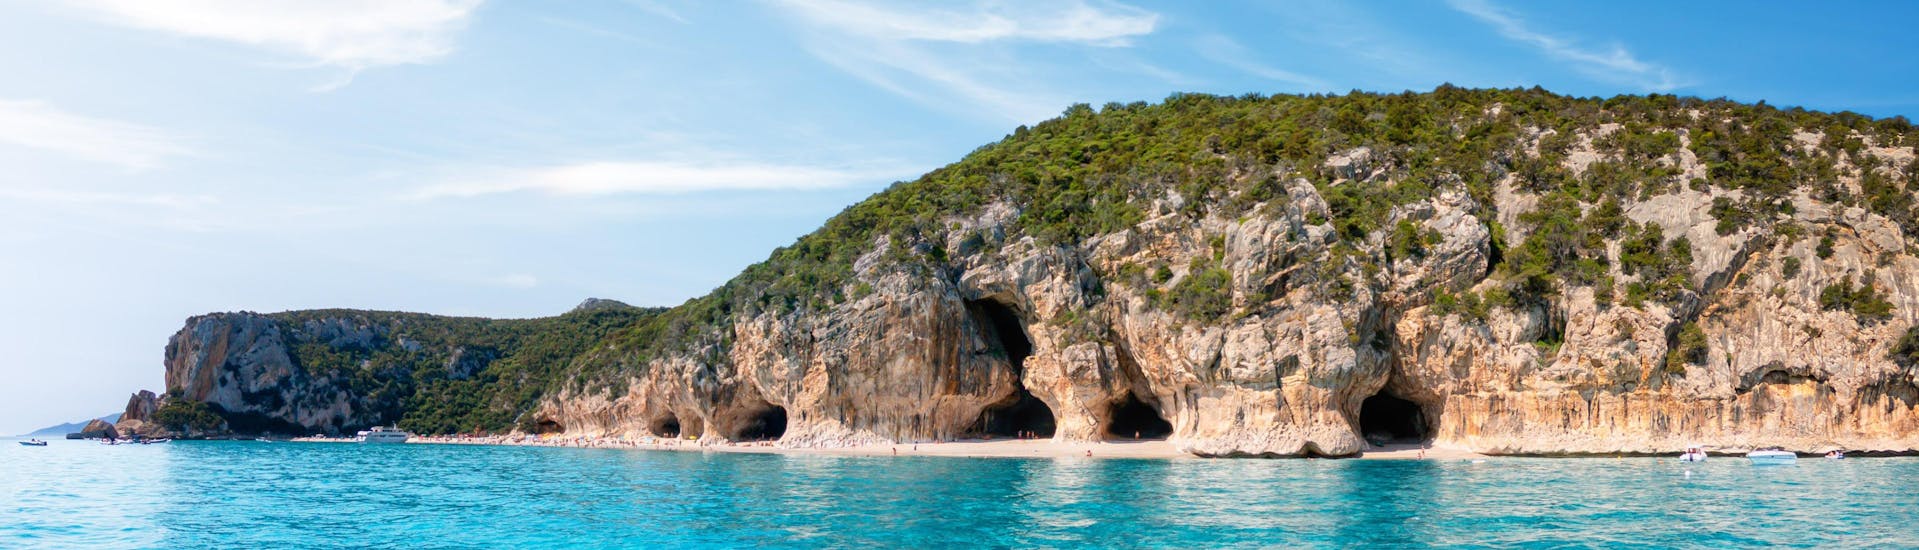 Immagine delle grotte lungo la costa di Cala Luna, in Sardegna, una destinazione popolare per le gite in barca.